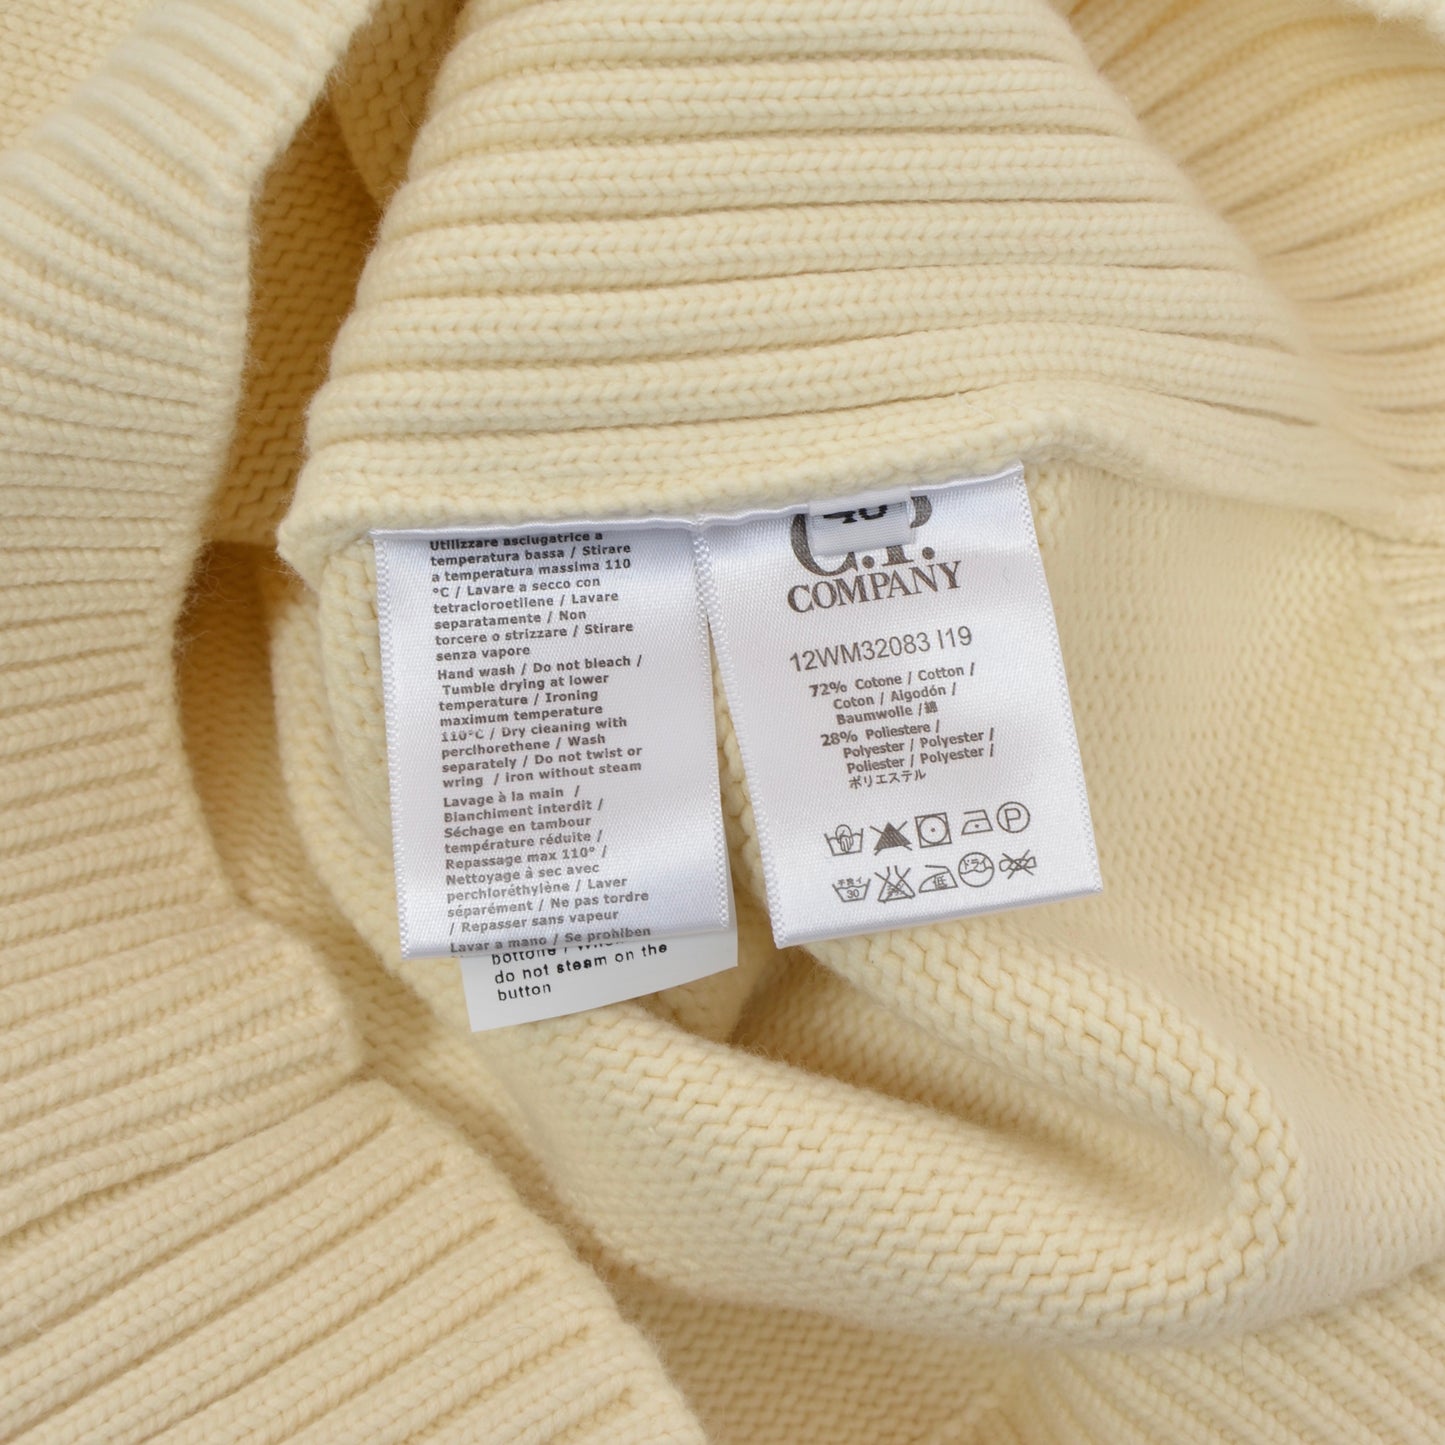 C.P. Company Shawl Collared Pullover Size 46 - Cream